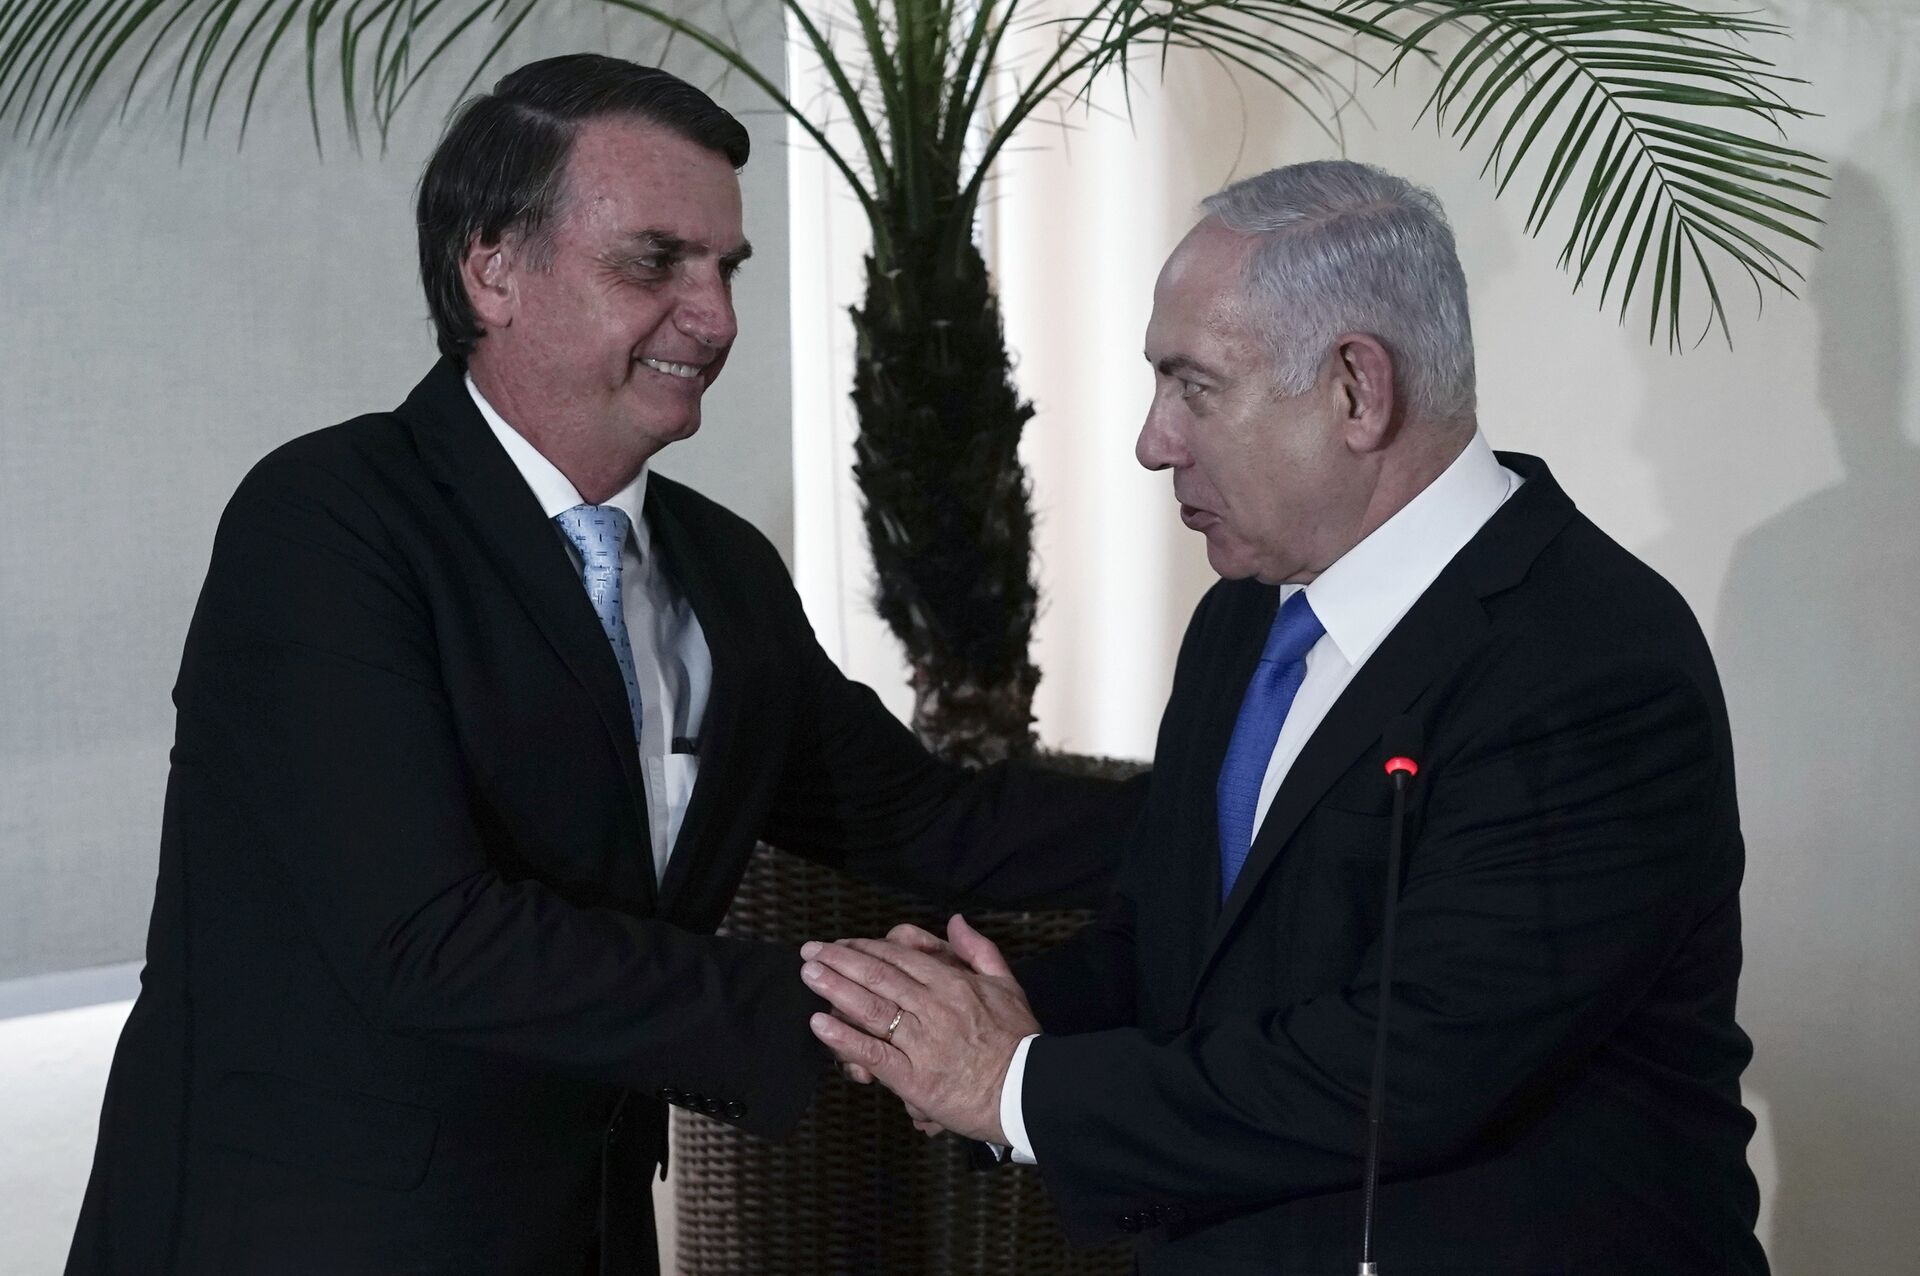 Apoio unilateral de Bolsonaro a Israel marcará diplomacia brasileira por décadas, diz especialista - Sputnik Brasil, 1920, 27.05.2021